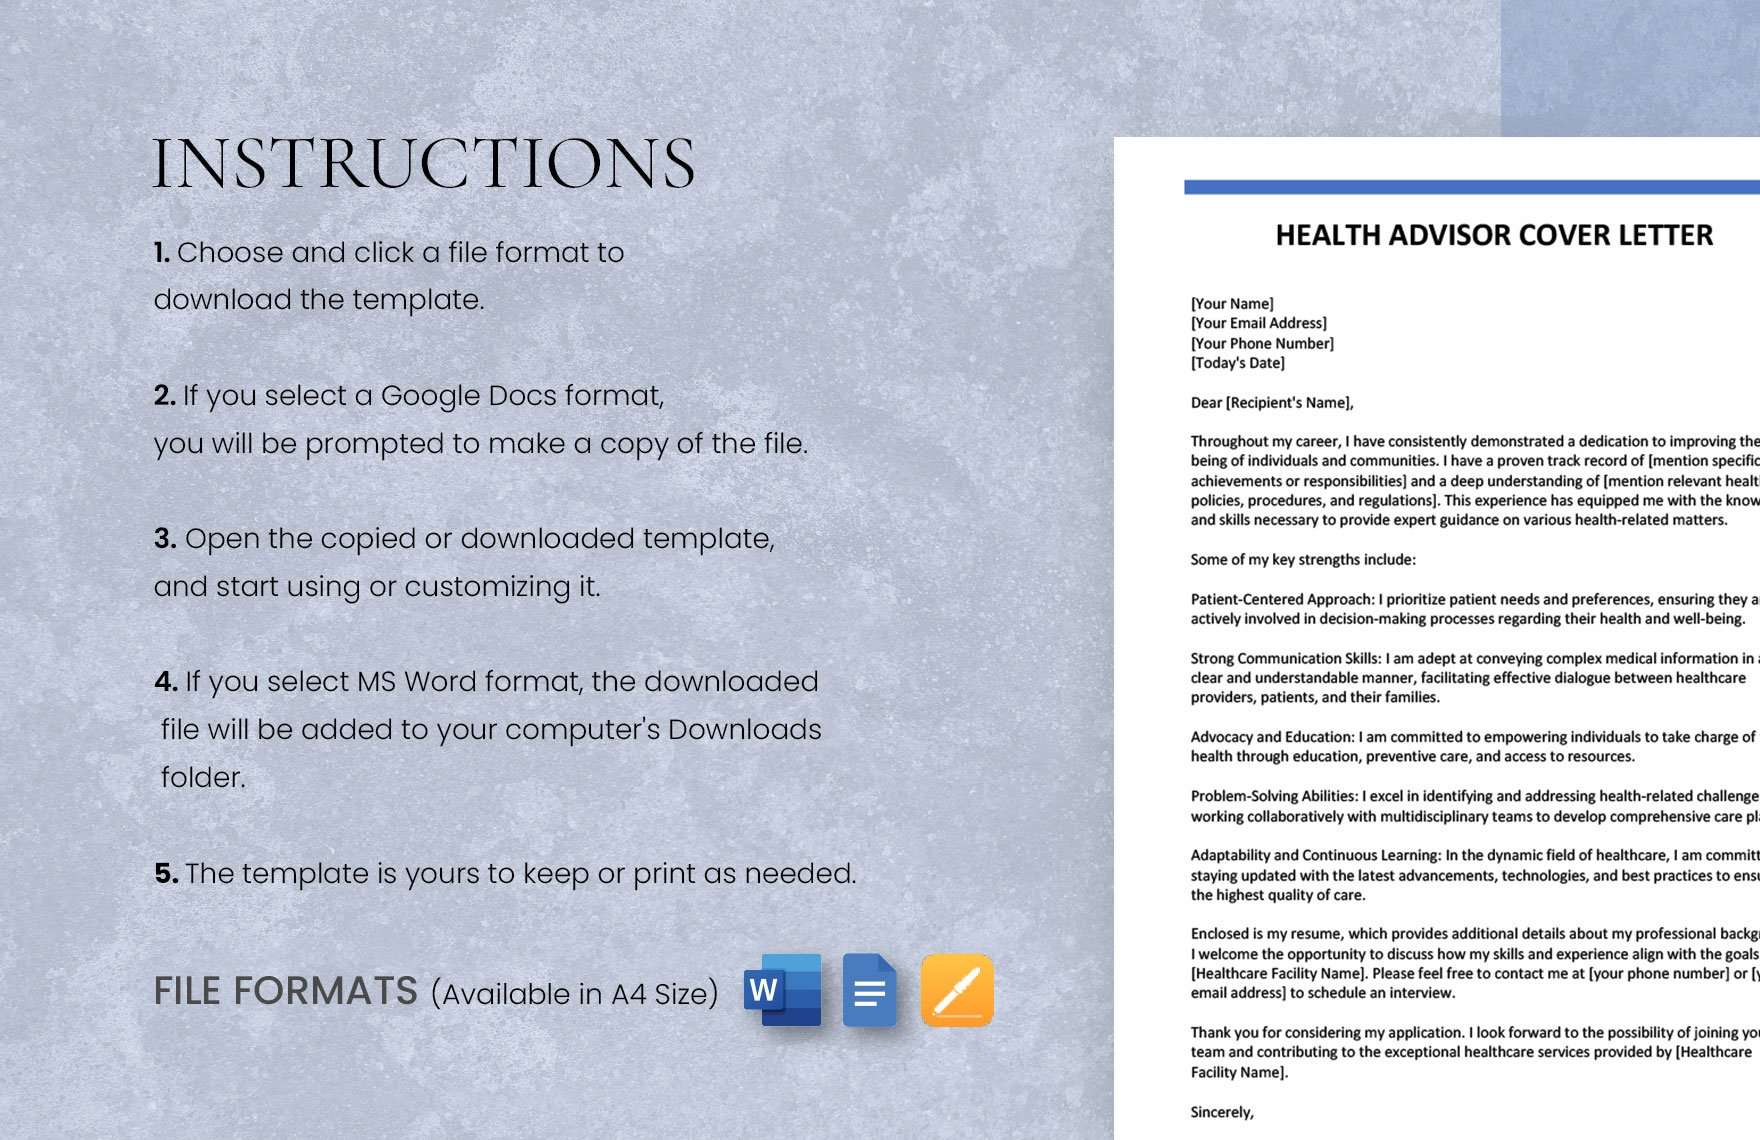 Health Advisor Cover Letter